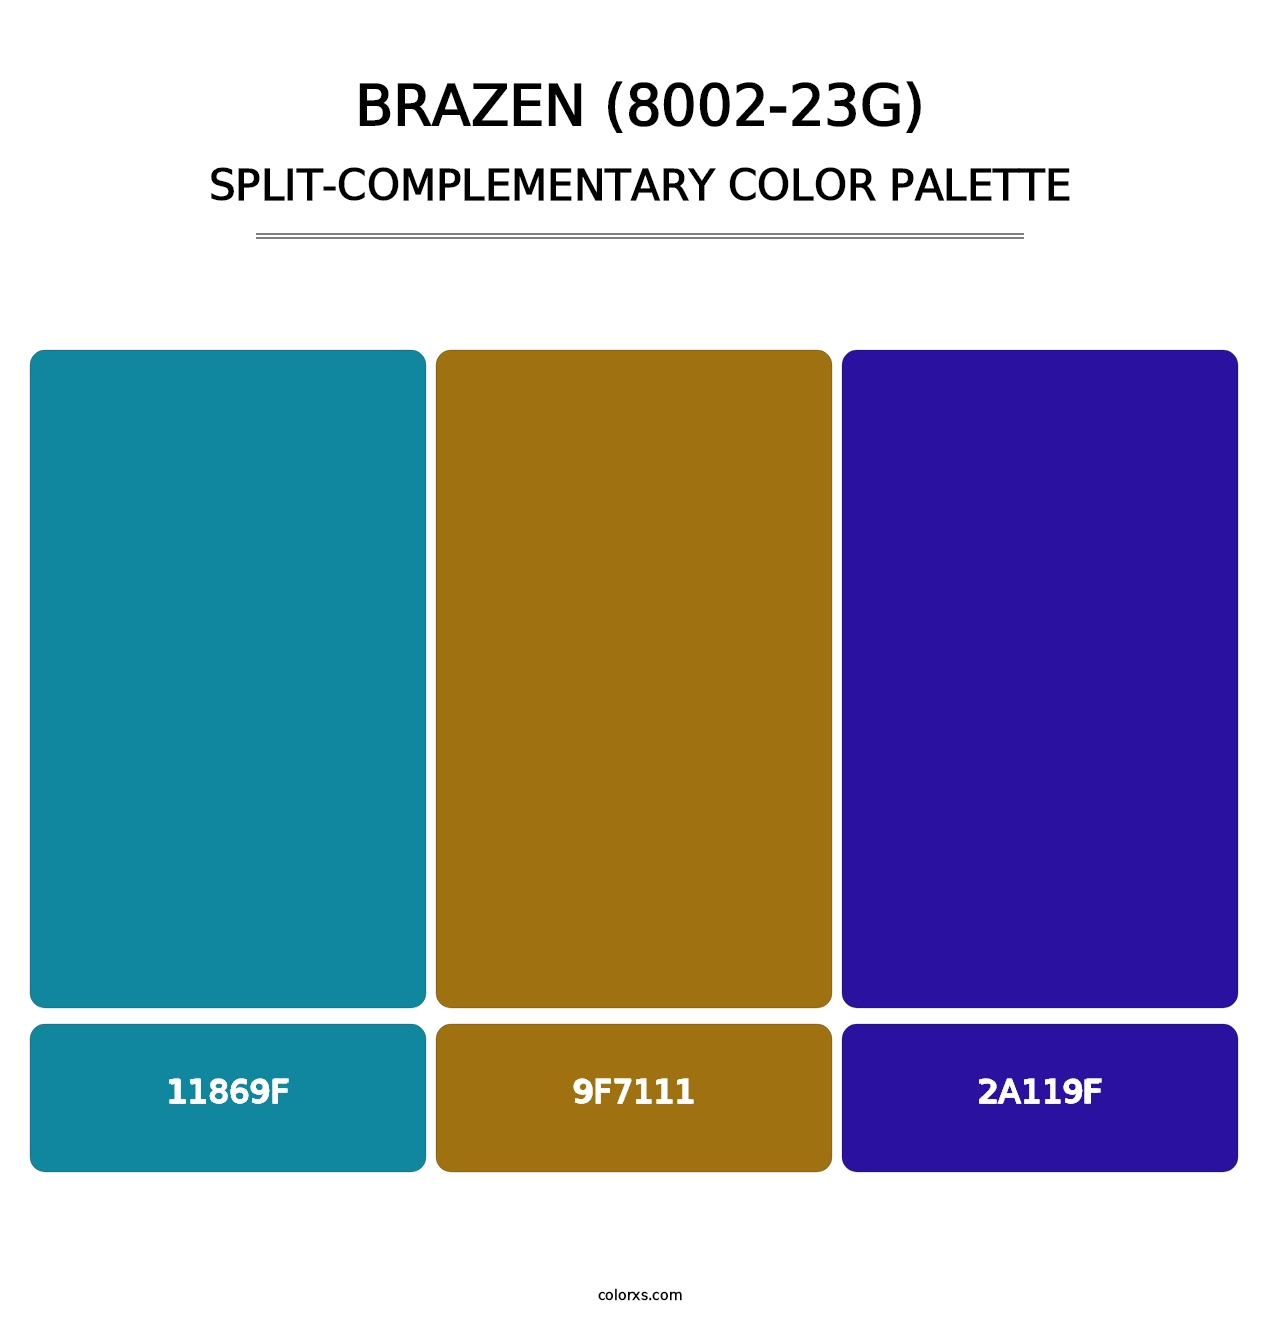 Brazen (8002-23G) - Split-Complementary Color Palette